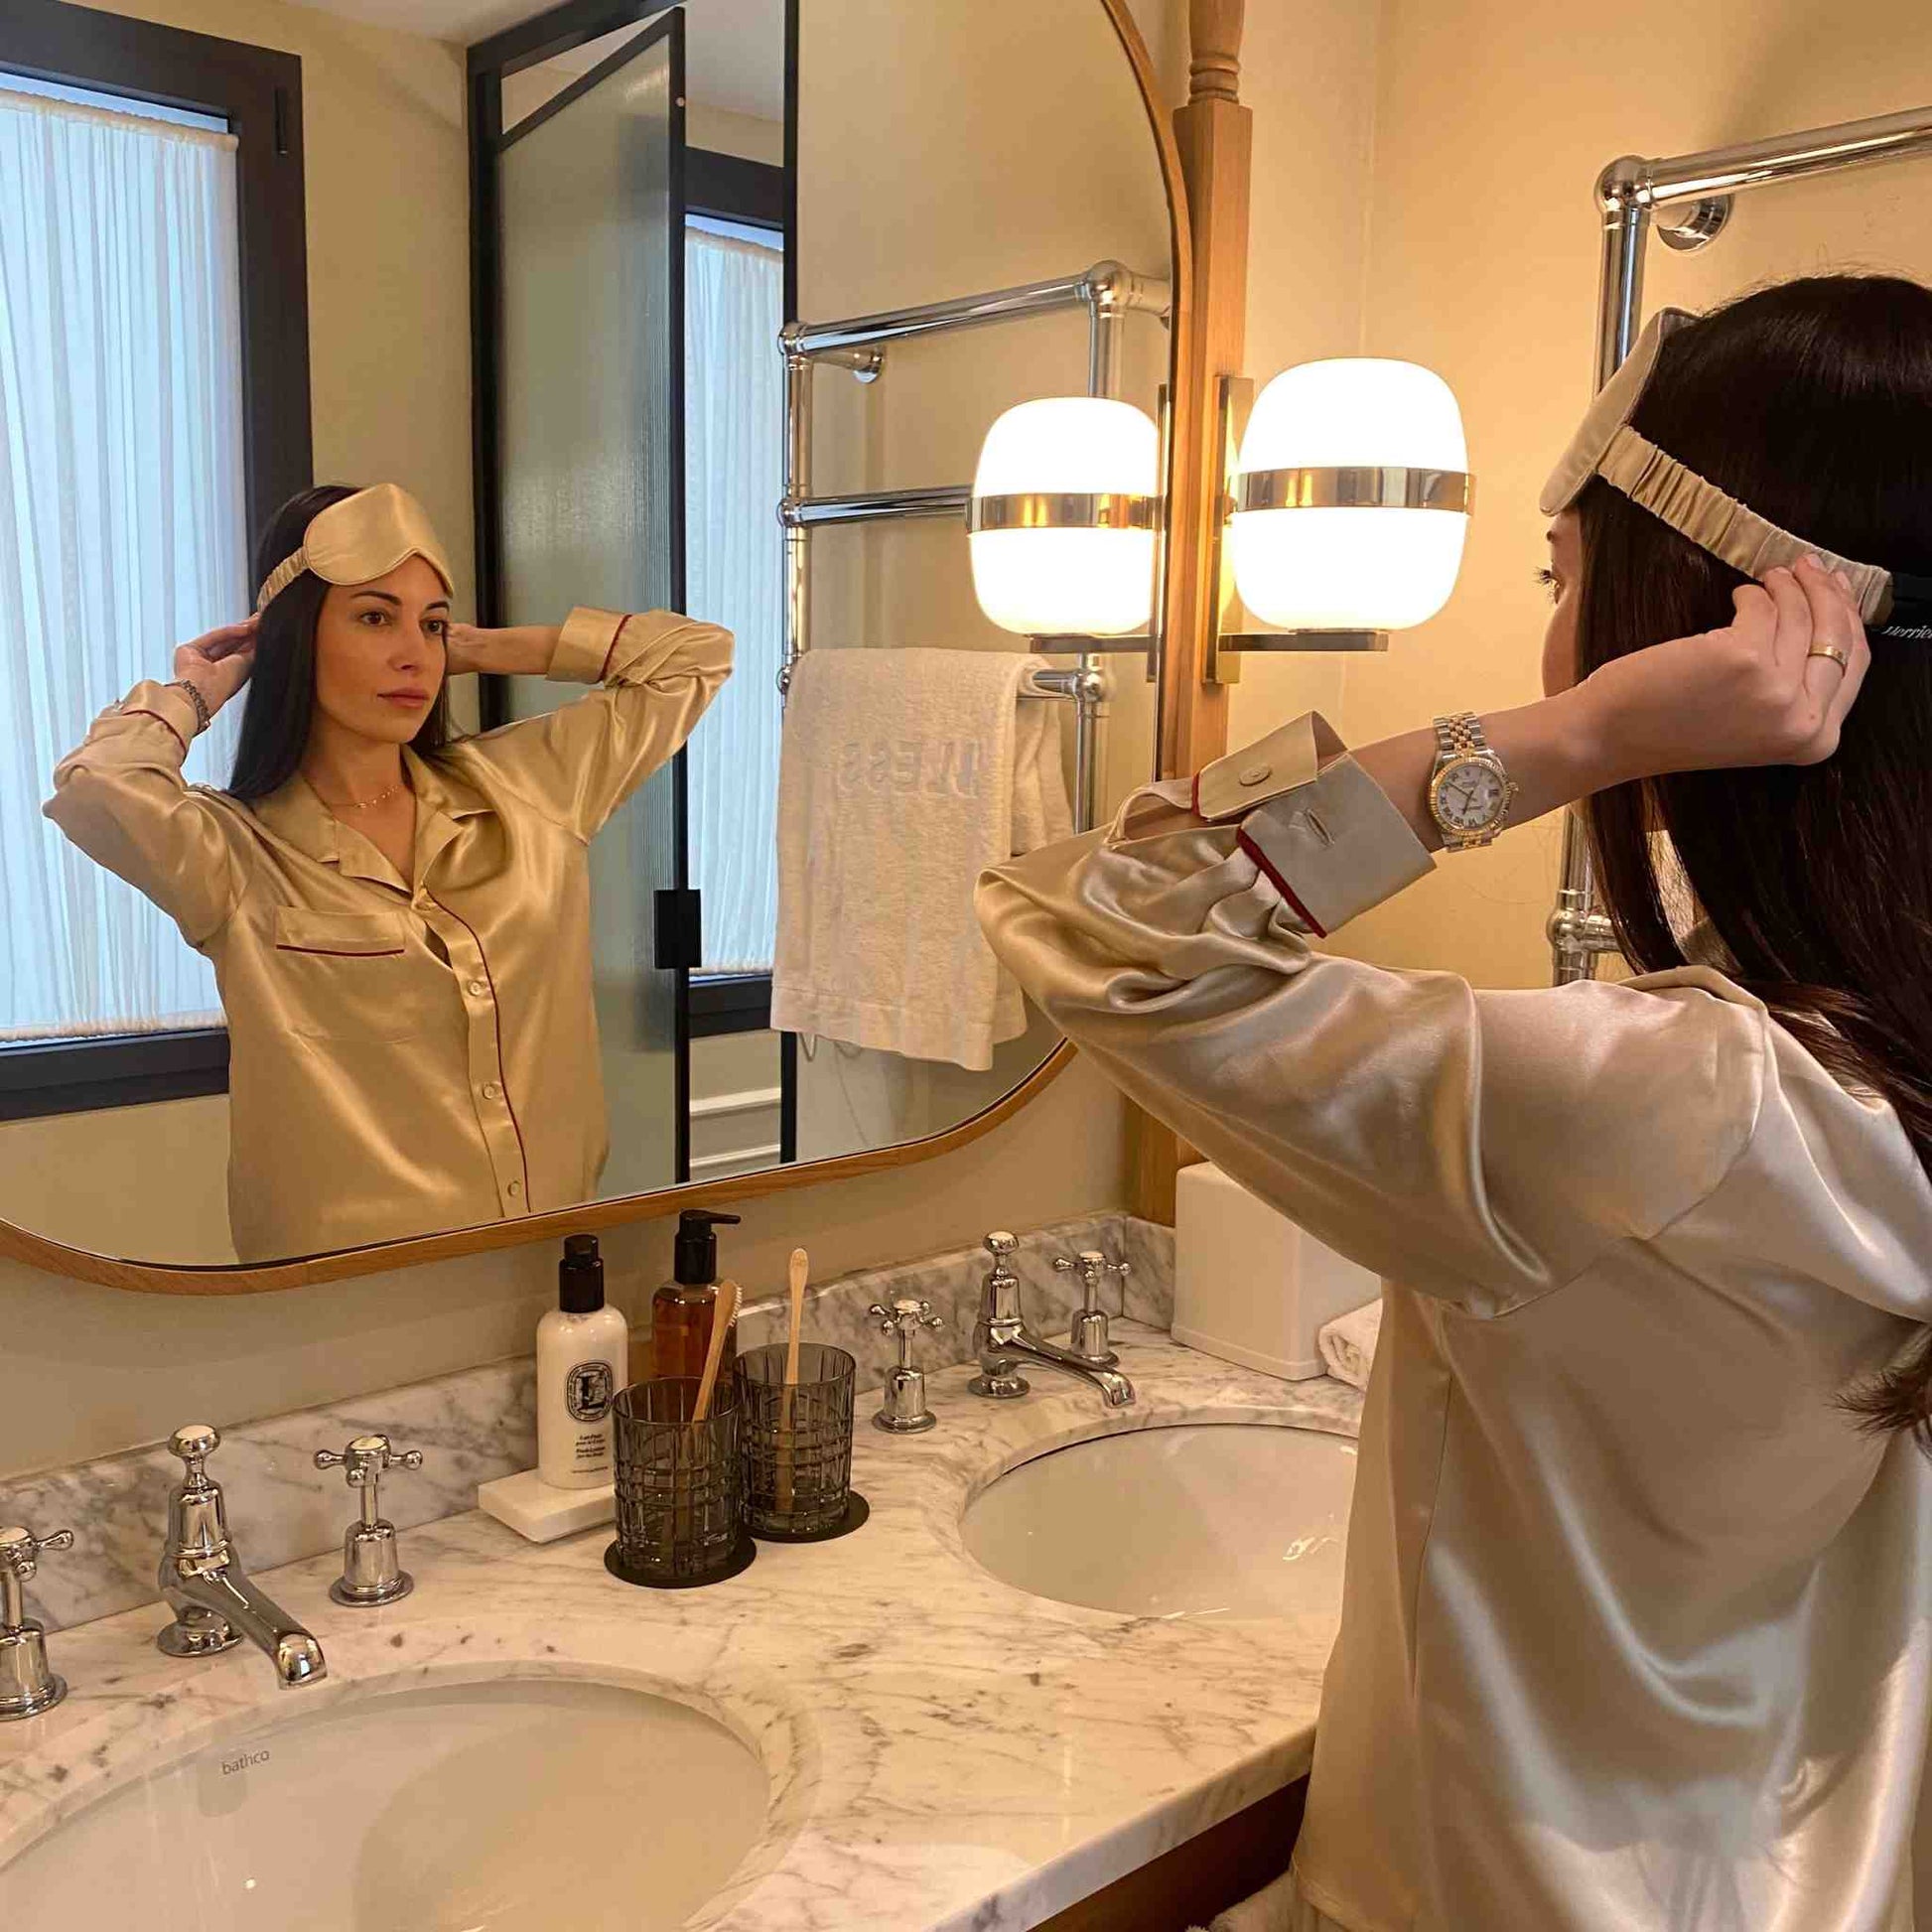 herriet - antifaz de seda para dormir en color beige. Chica mirandose al espejo con el antifaz puesto en la cabeza y el pijama de seda del mismo color de la marca